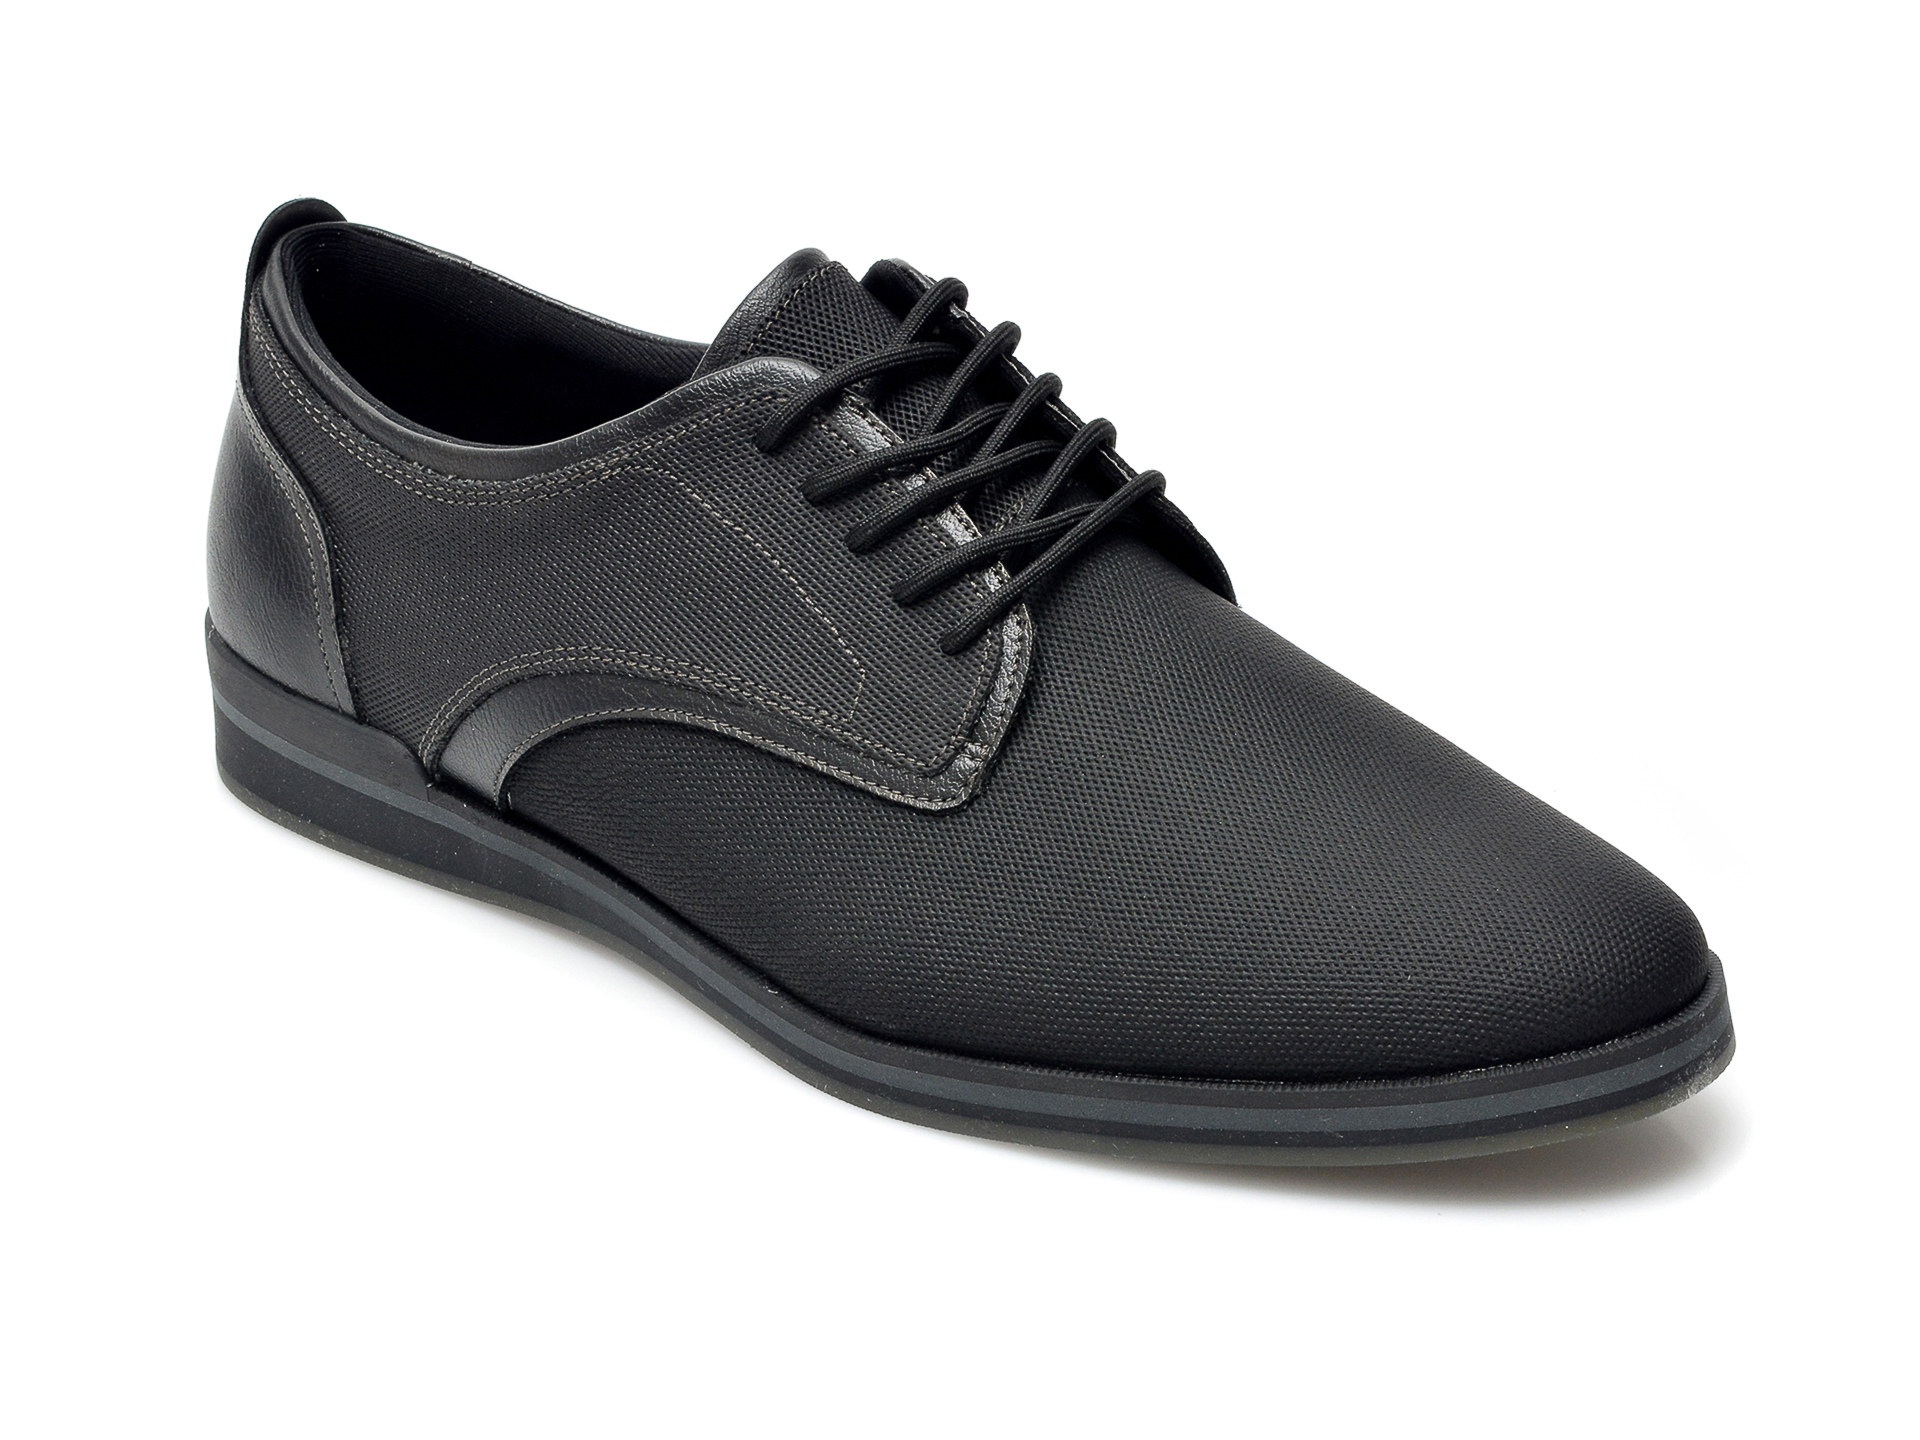 Pantofi ALDO negri, Eowoalian001, din piele ecologica ALDO imagine 2022